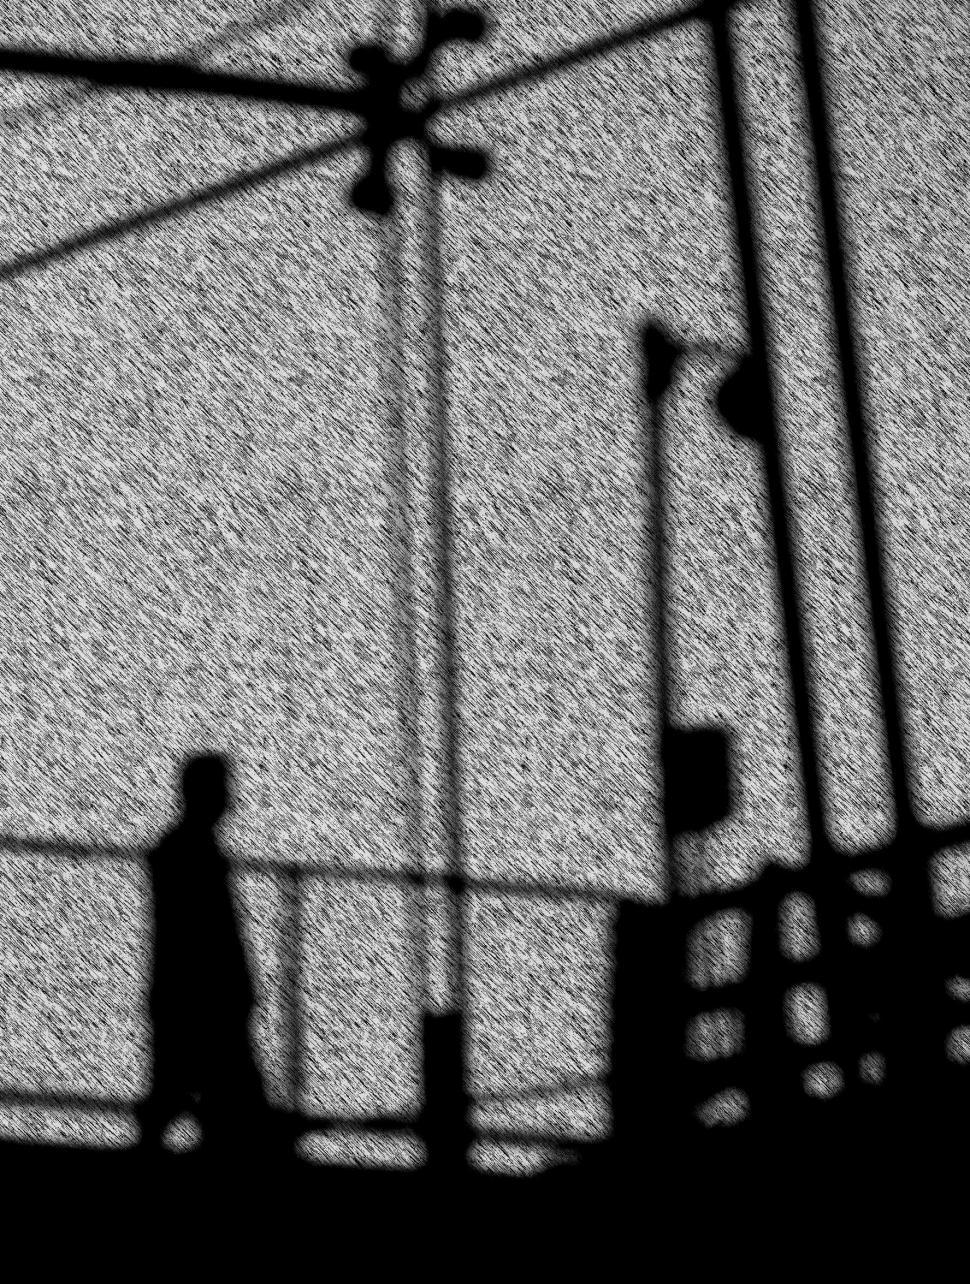 Free Image of Walking man silhouette 